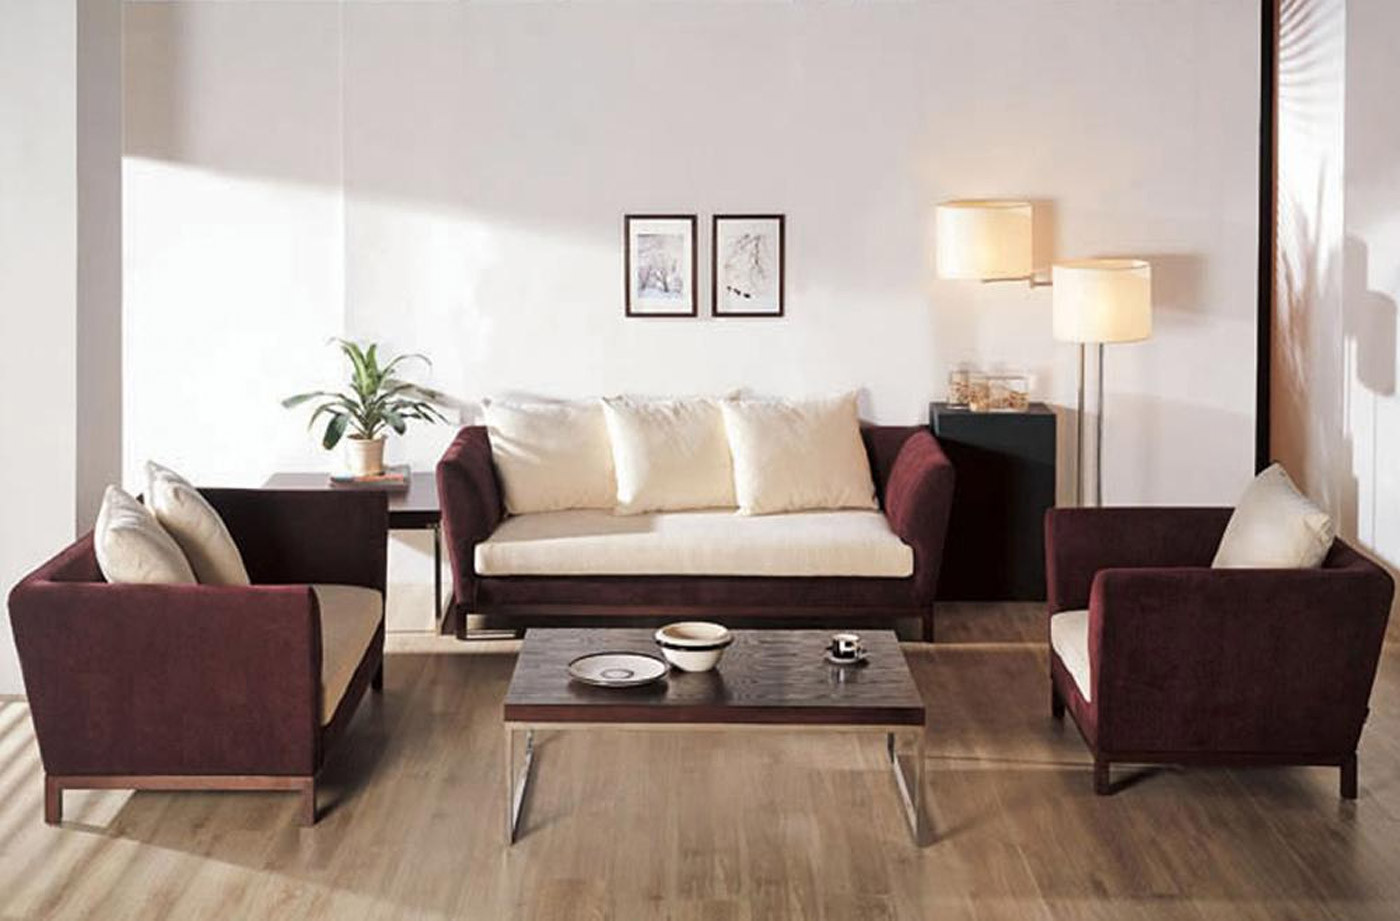 Modern Living Room Furniture Sets
 Find Suitable Living Room Furniture With Your Style